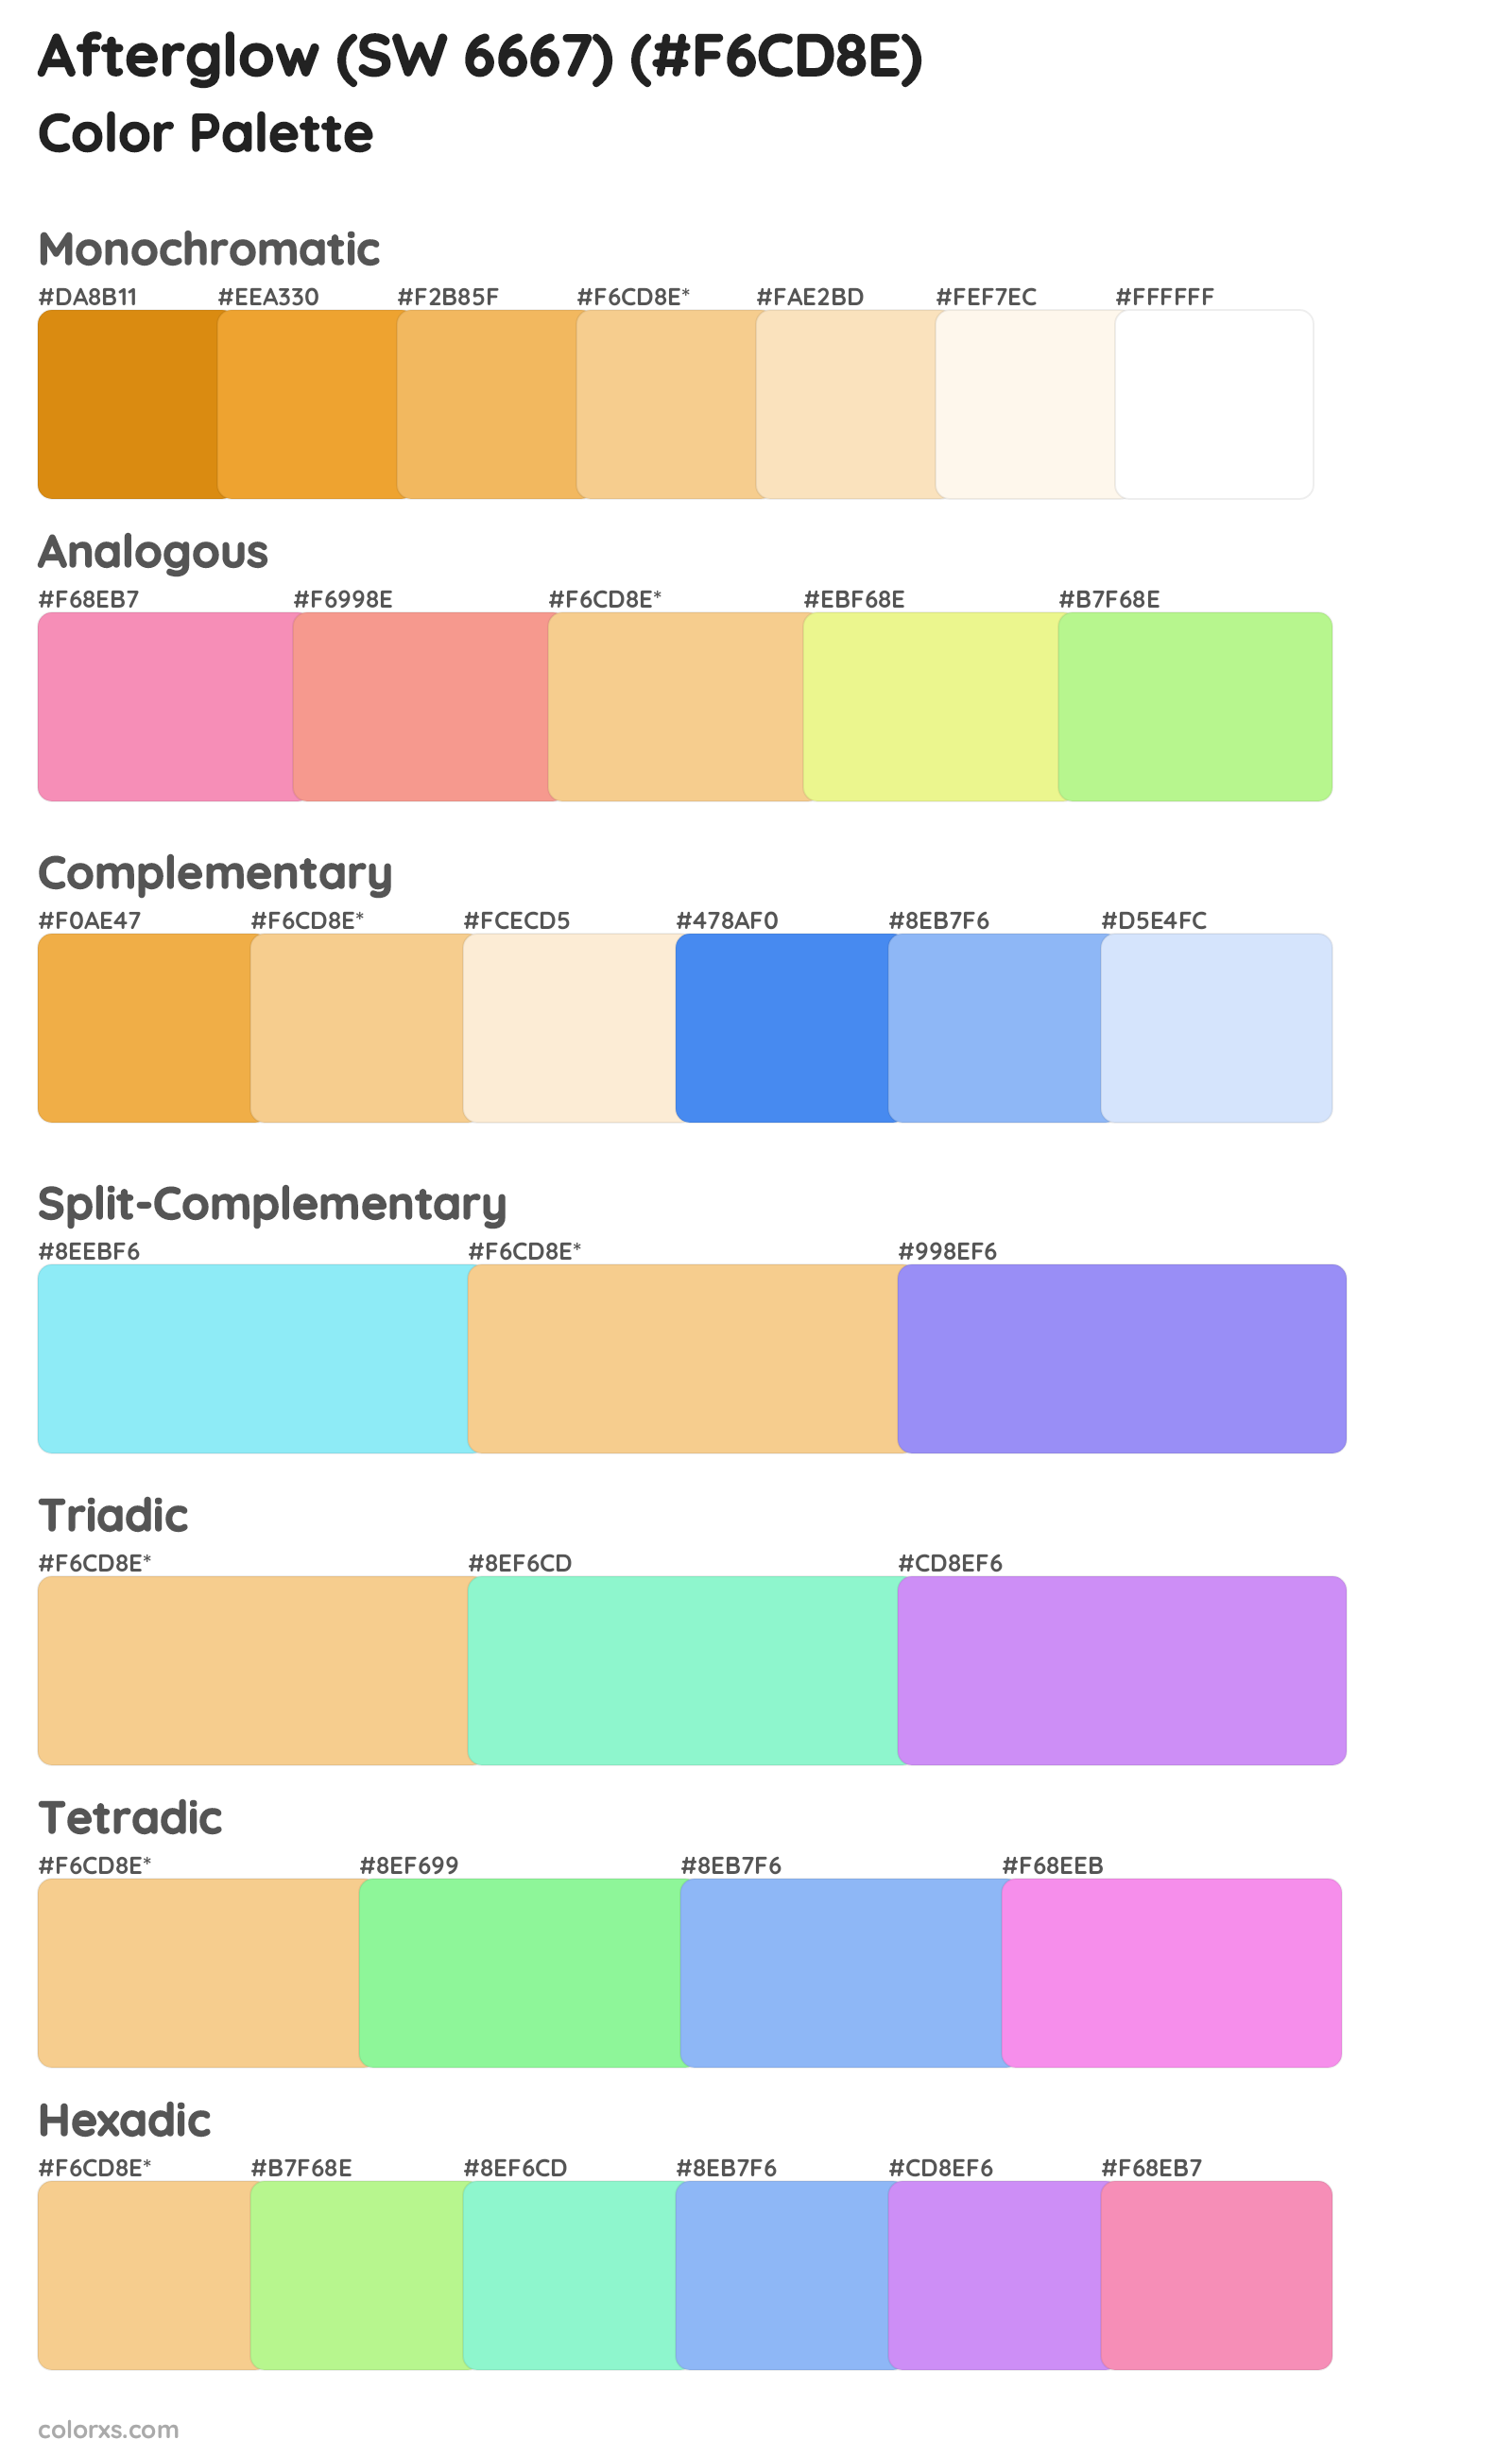 Afterglow (SW 6667) Color Scheme Palettes